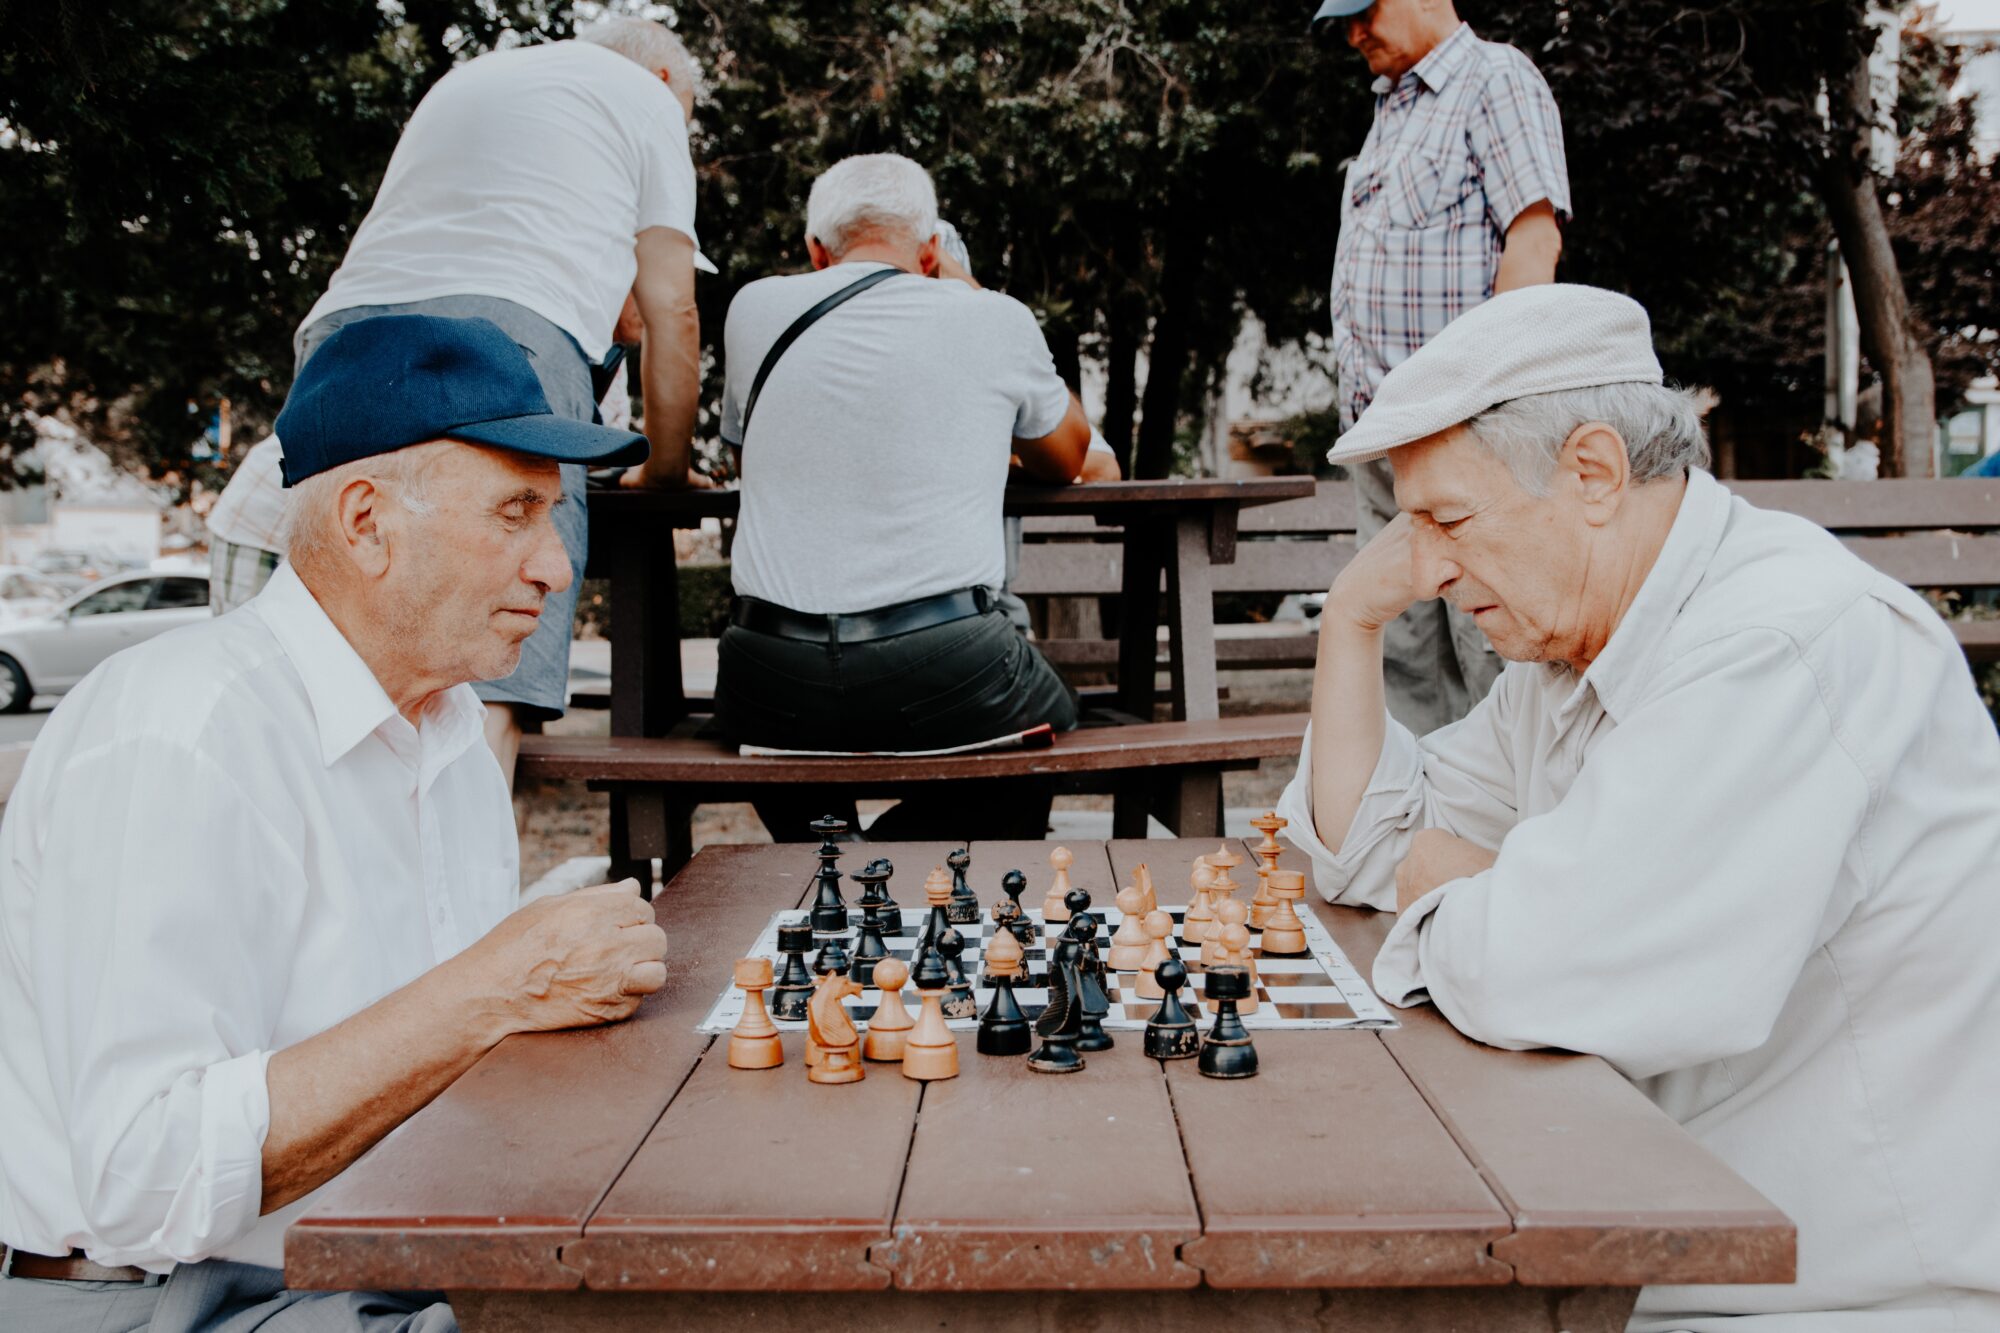 Una comunidad amigable con las personas mayores adapta los servicios y estructuras físicas para ser más inclusiva